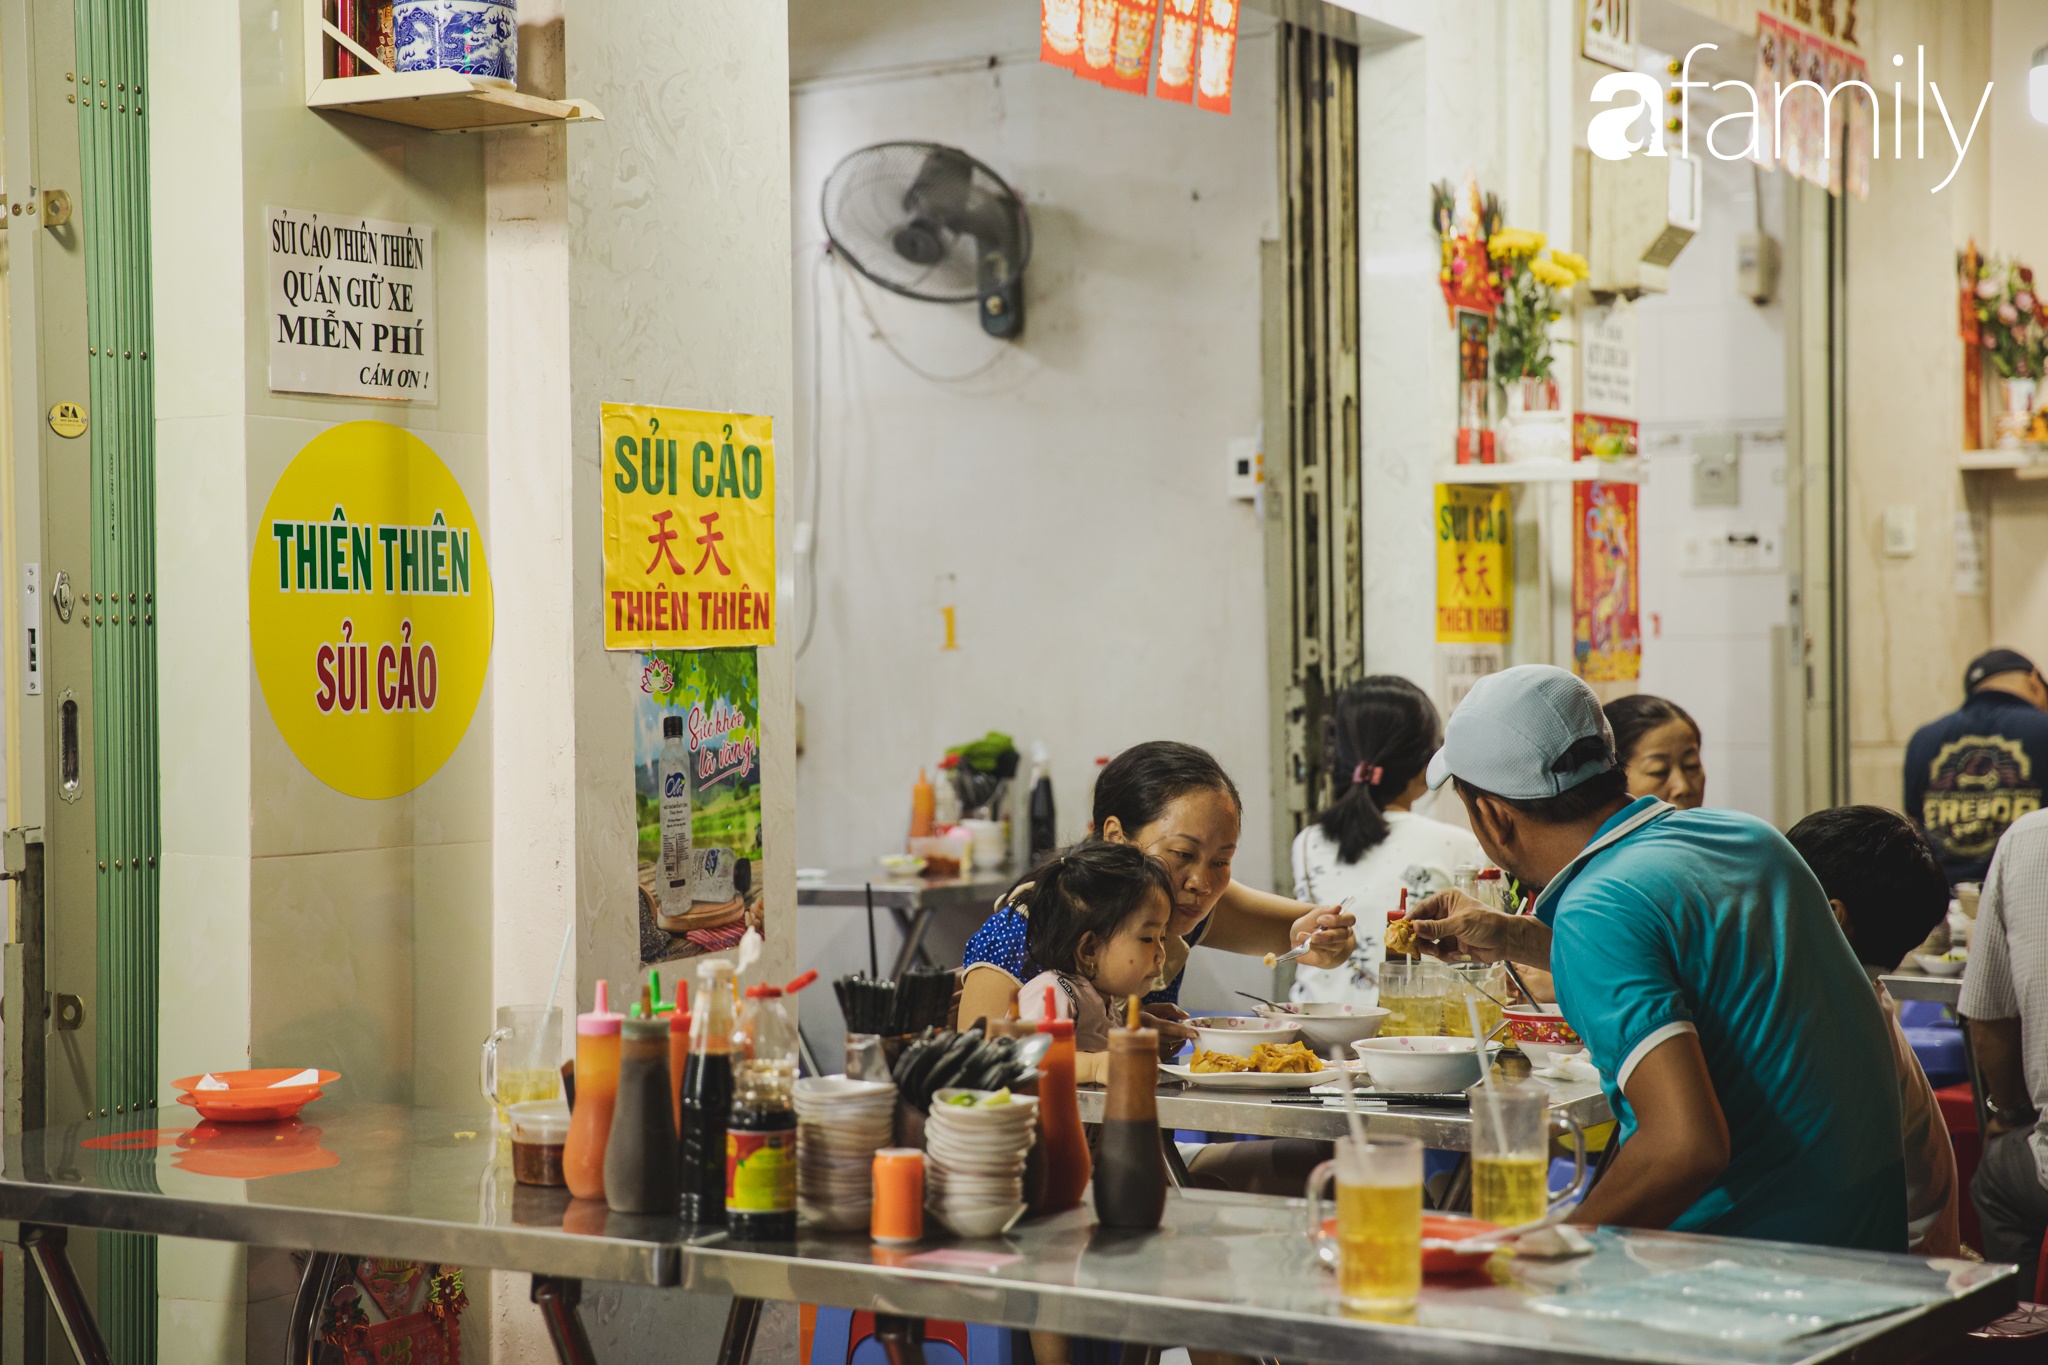 Chiều chiều kéo nhau đi ăn tiệm ở phố sủi cảo Hà Tôn Quyền, nét văn hóa thú vị của người Sài Gòn - Ảnh 9.